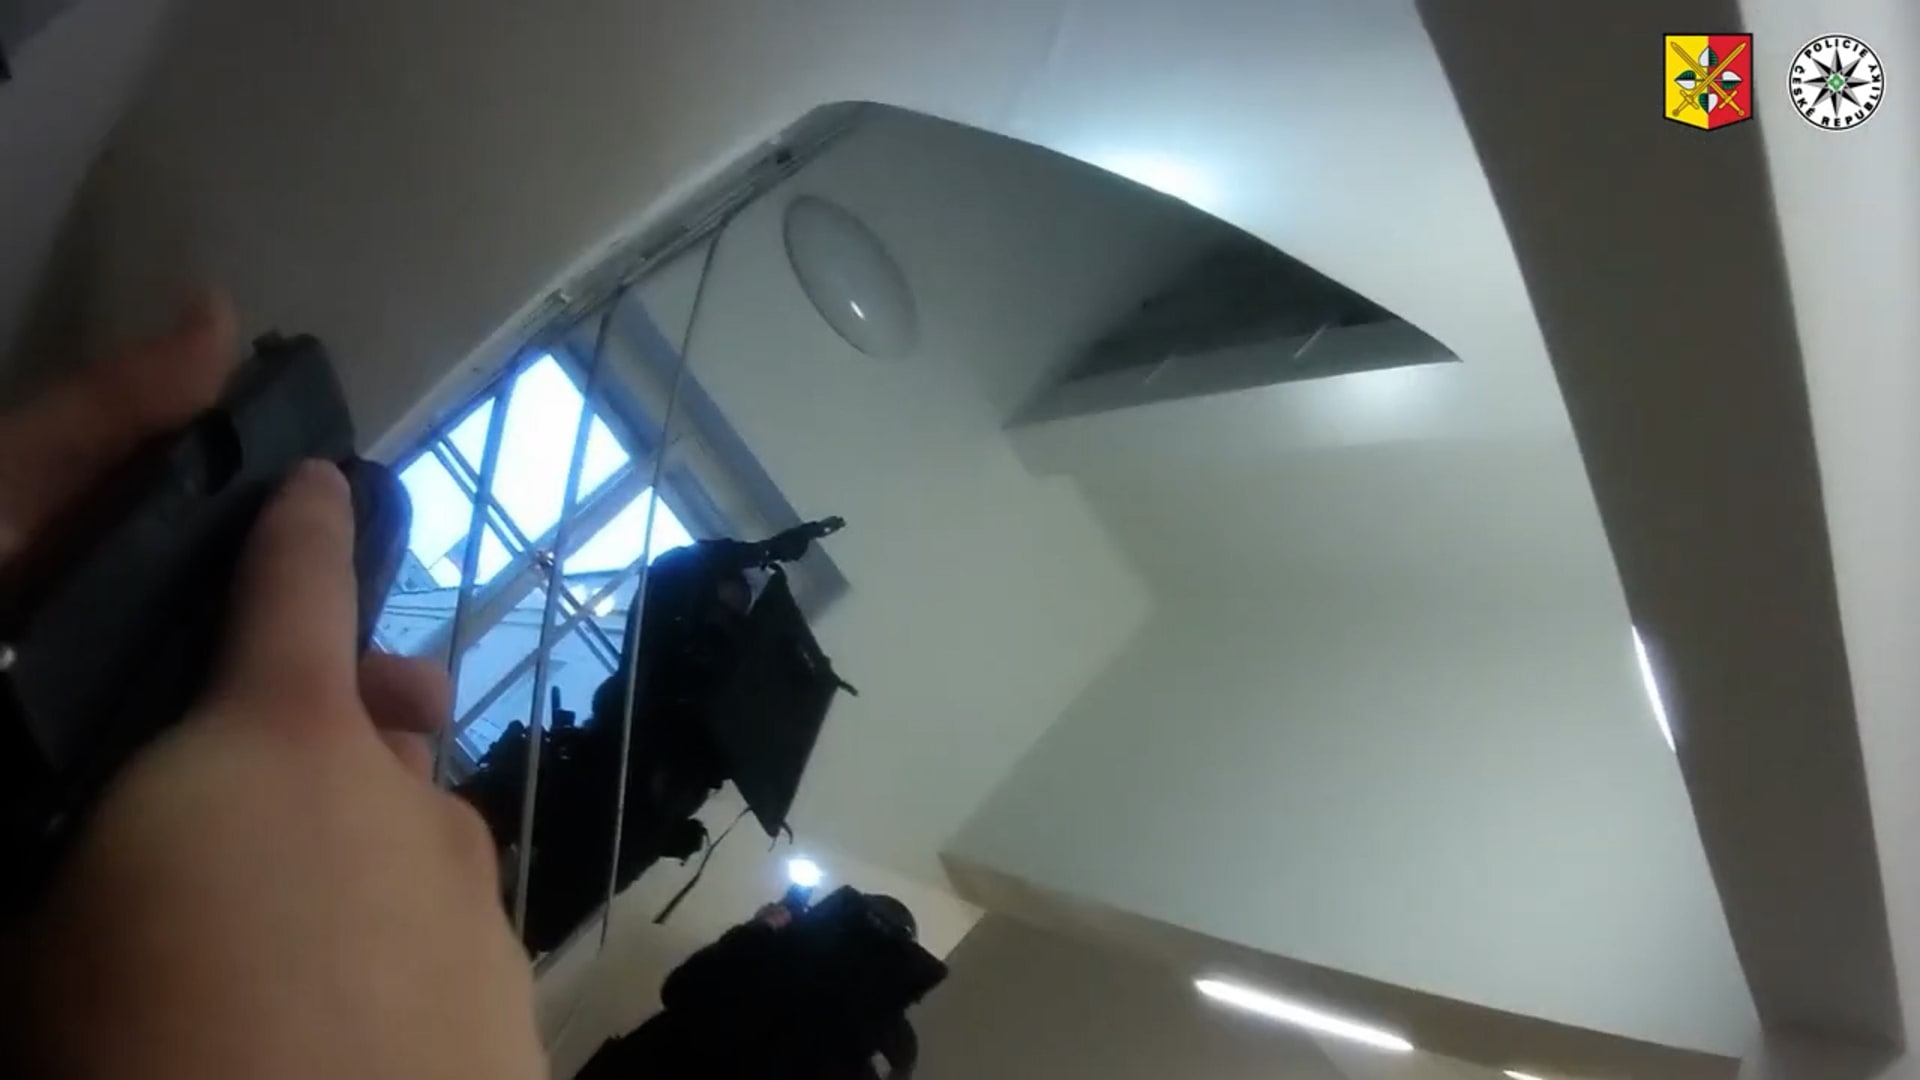 Policie zveřejnila dramatické video ze zásahu na Filozofické fakultě Univerzity Karlovy.